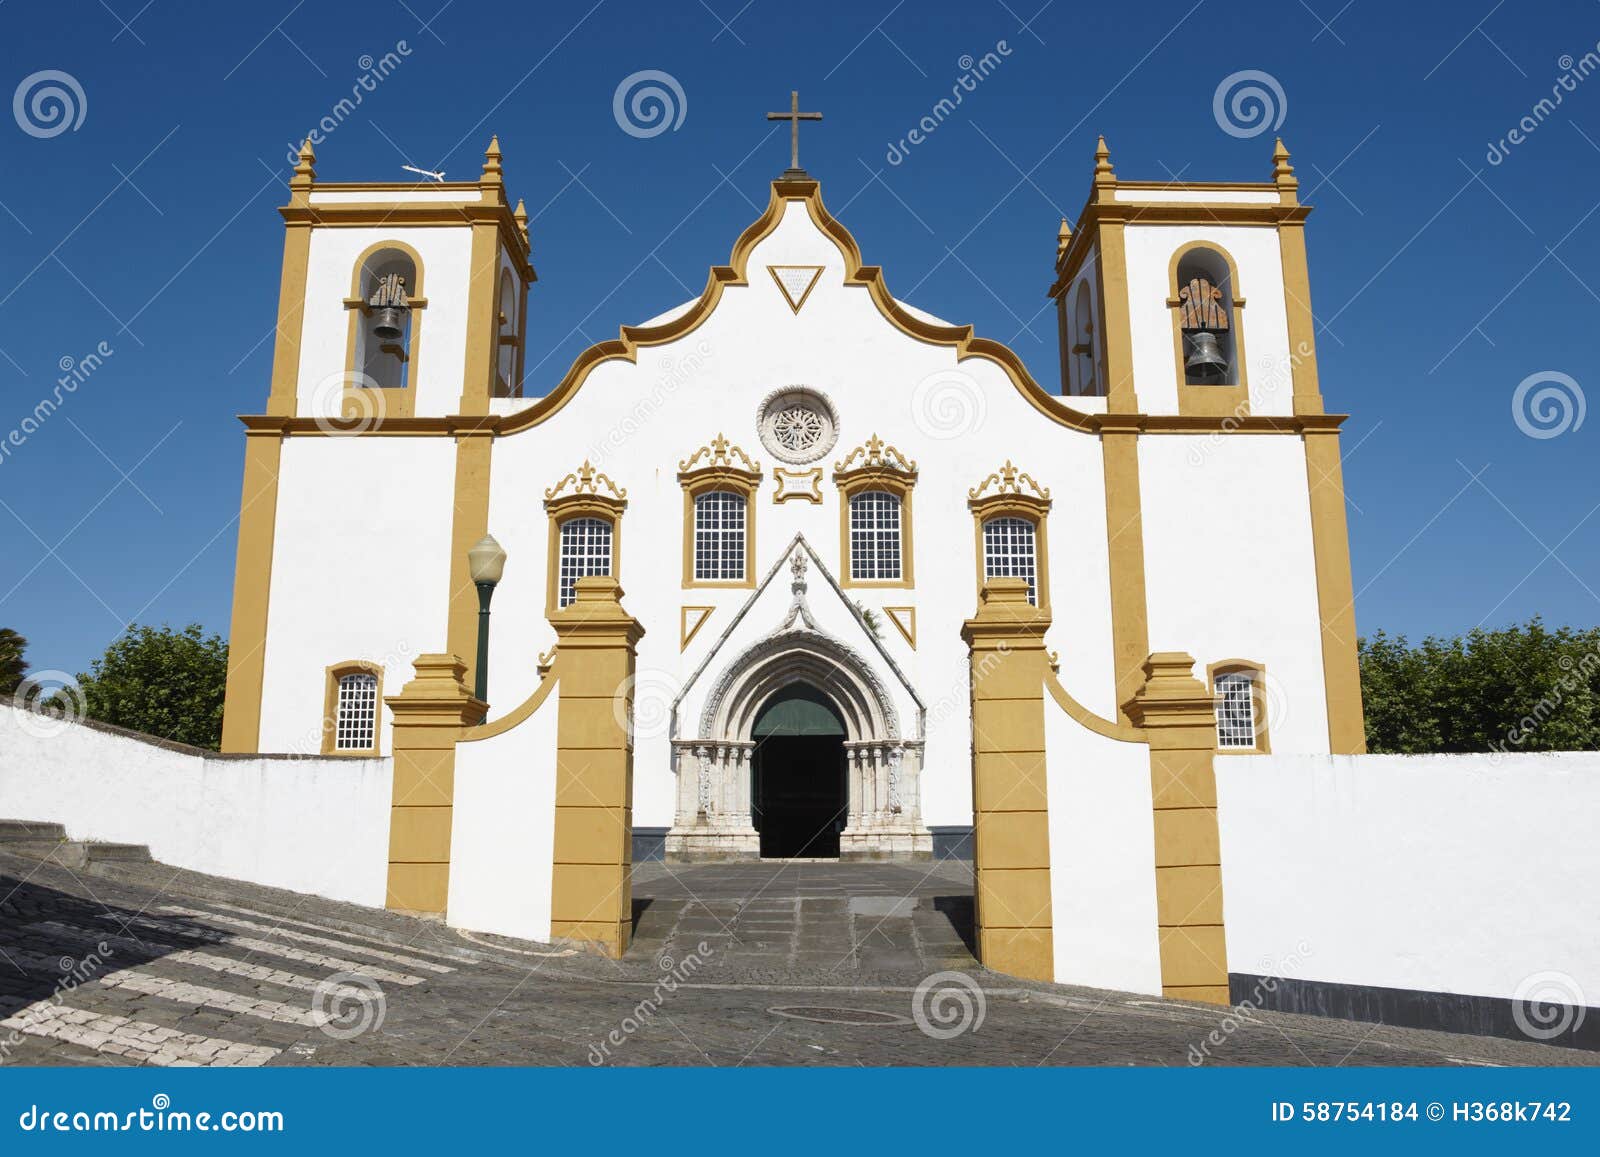 traditional azores church. santa cruz. praia da vitoria. terceir